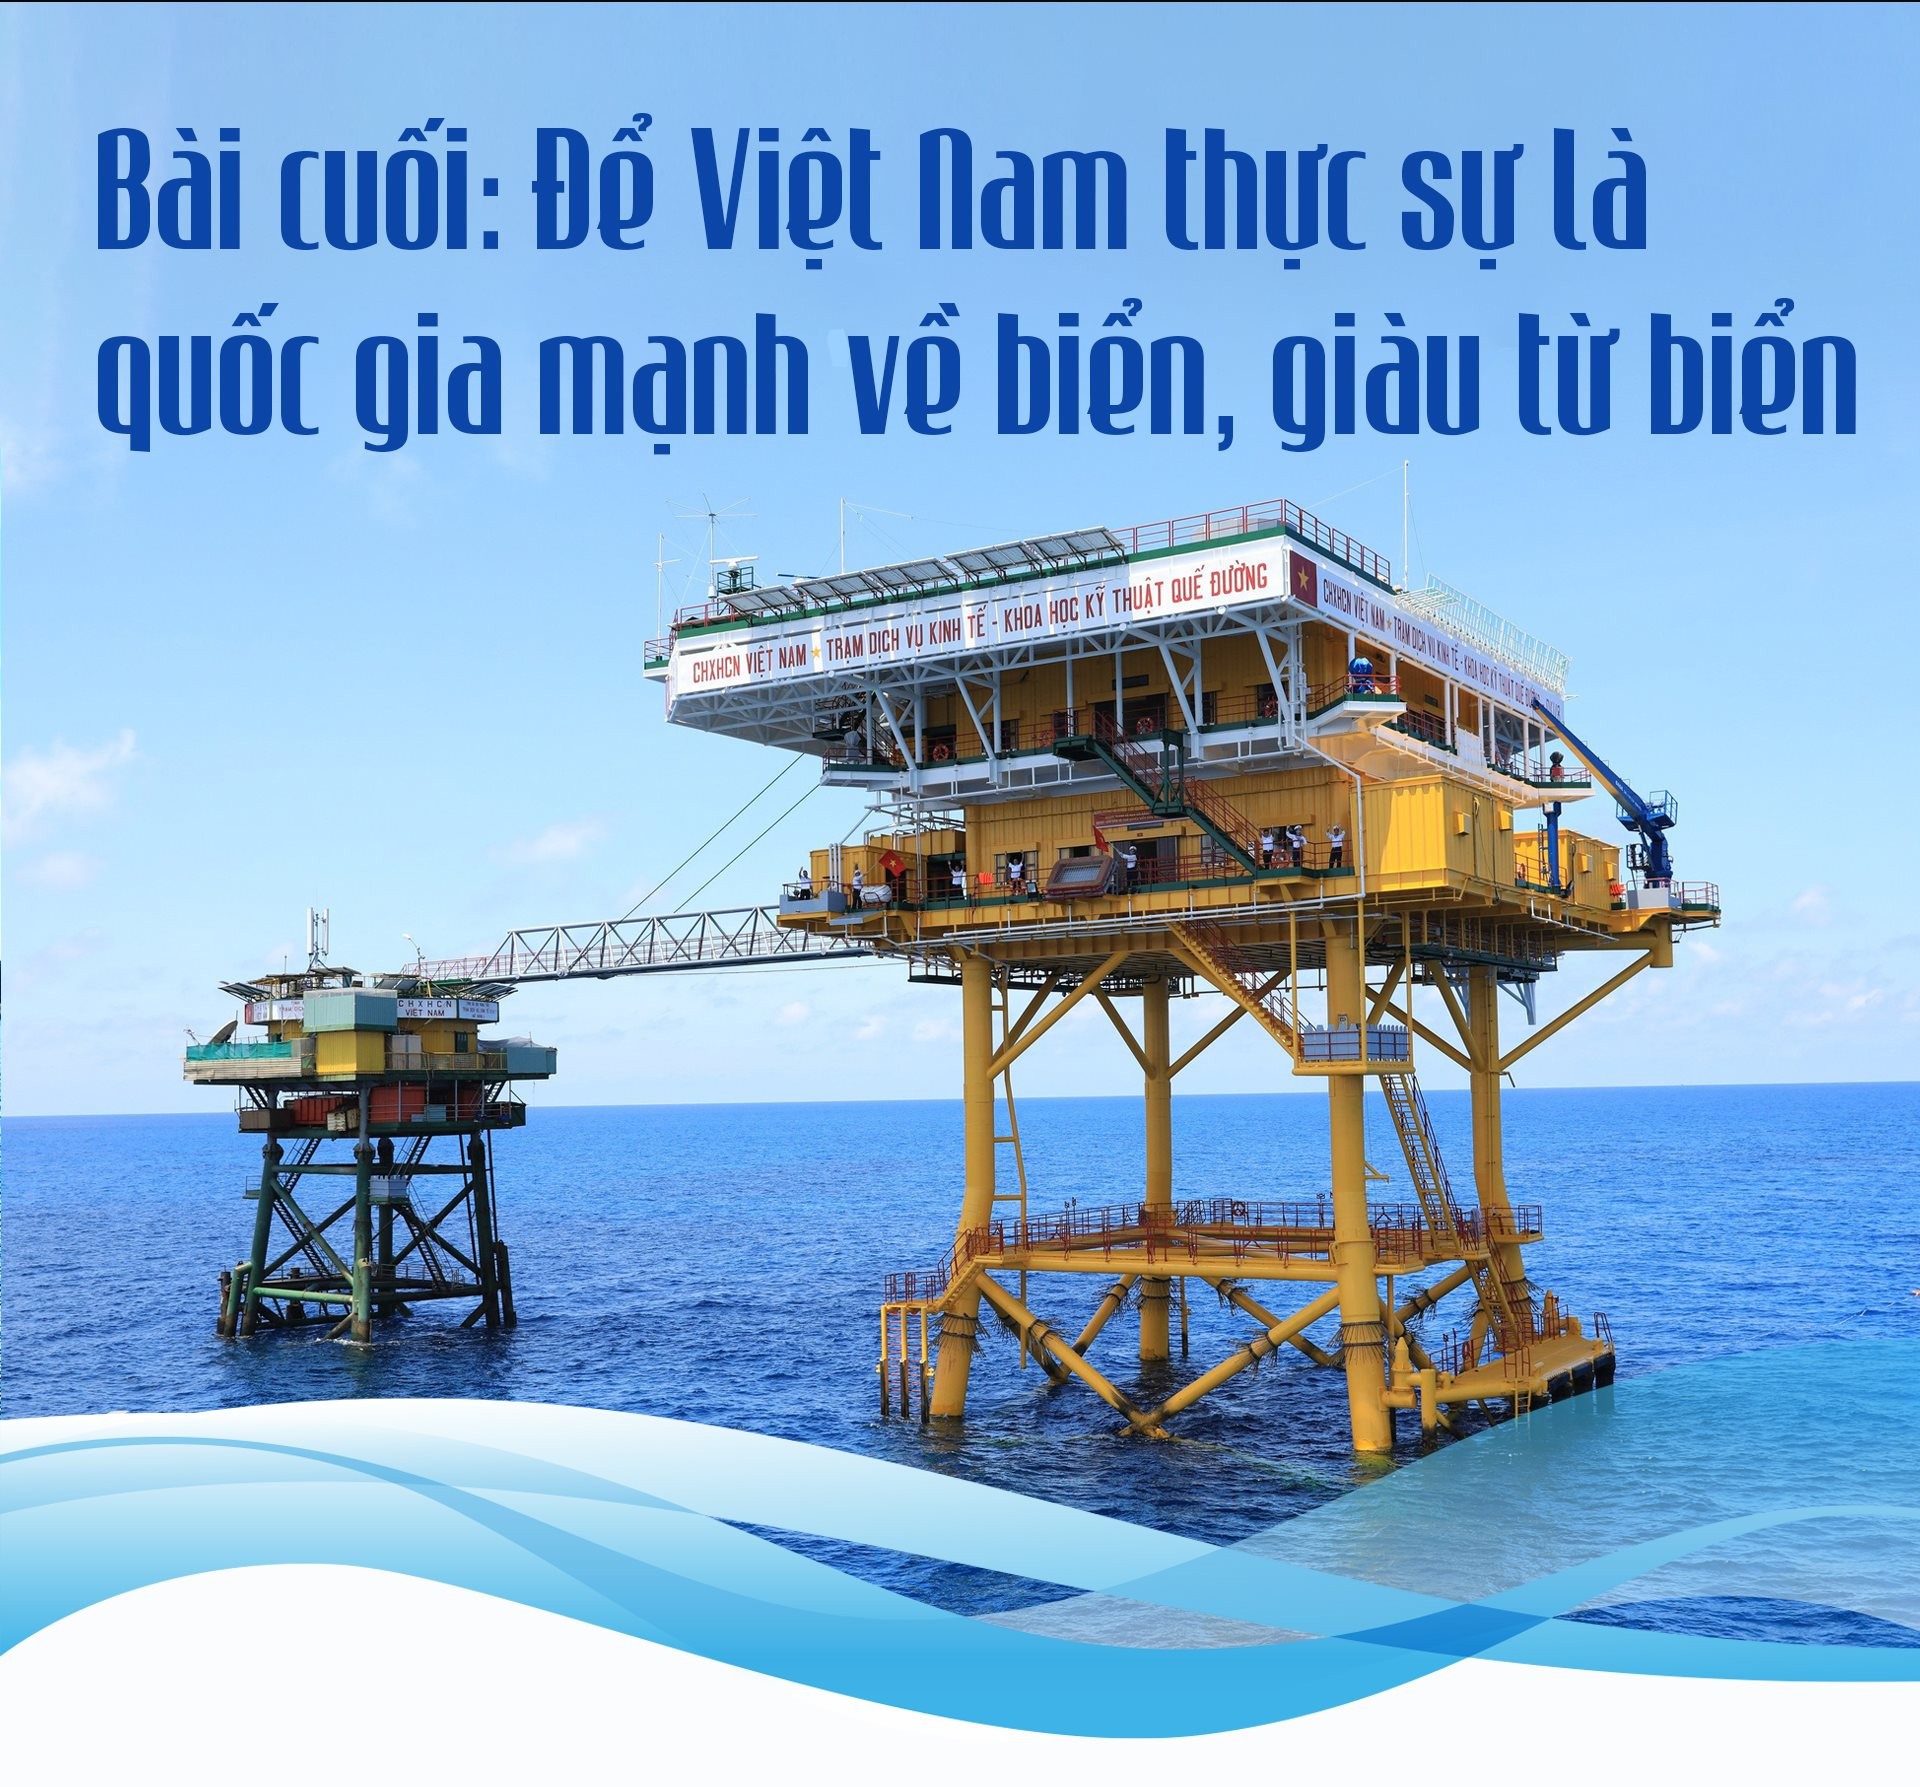 Bài cuối: Để Việt Nam thực sự là quốc gia mạnh về biển, giàu từ biển